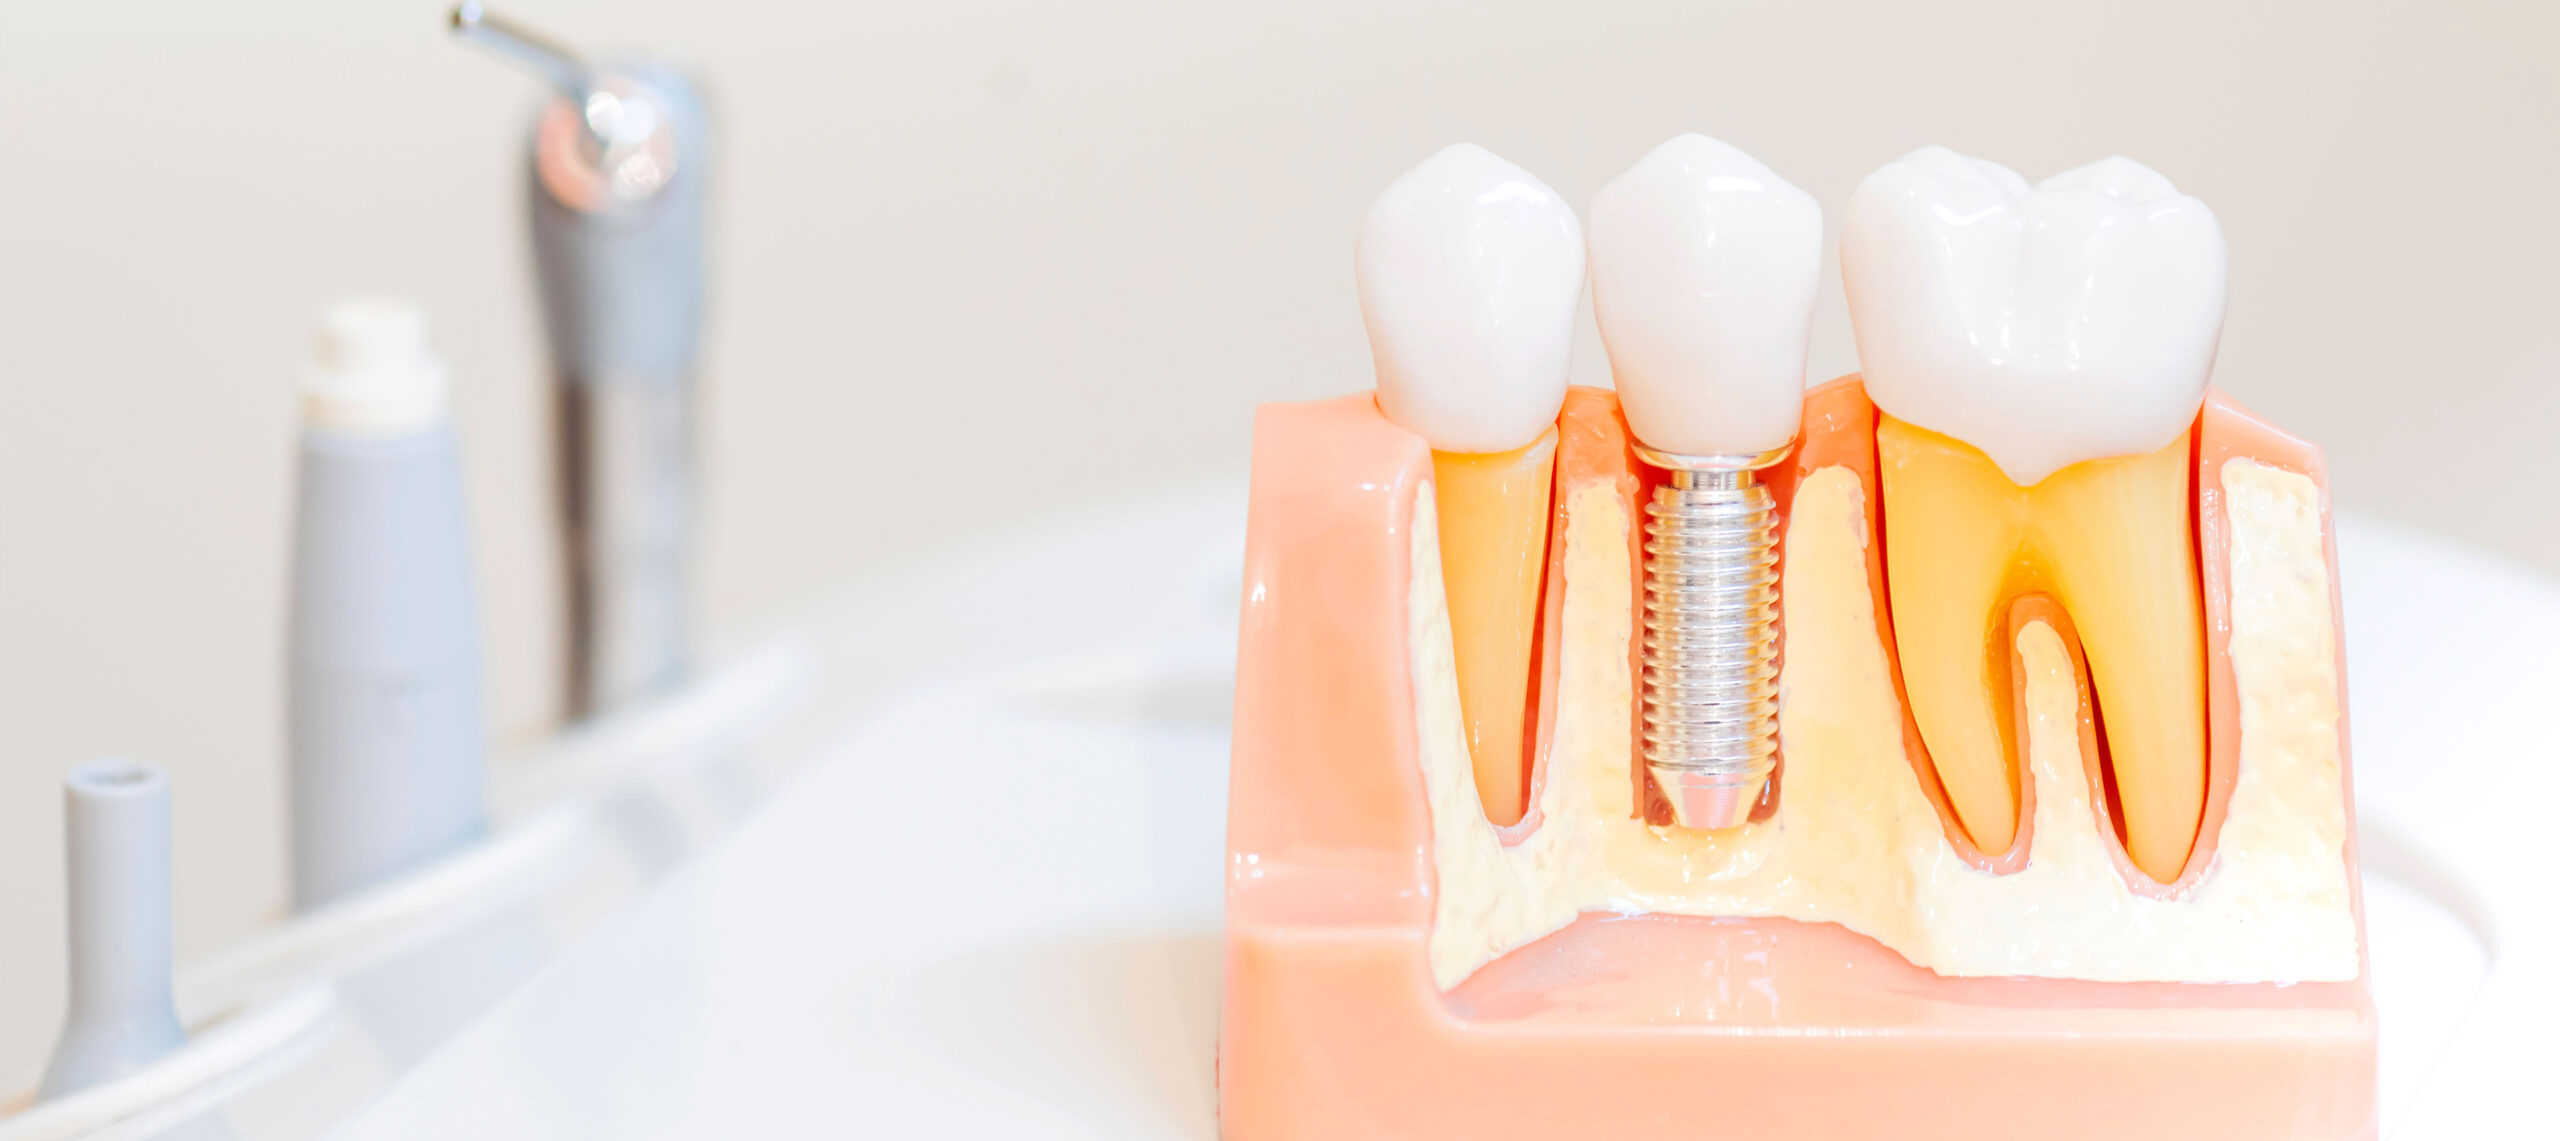 Maquette détaillée de la structure dentaire avec un implant intégré, clinique dentaire Deslauriers Pissardo Jacques, instruments dentaires flous en arrière-plan.